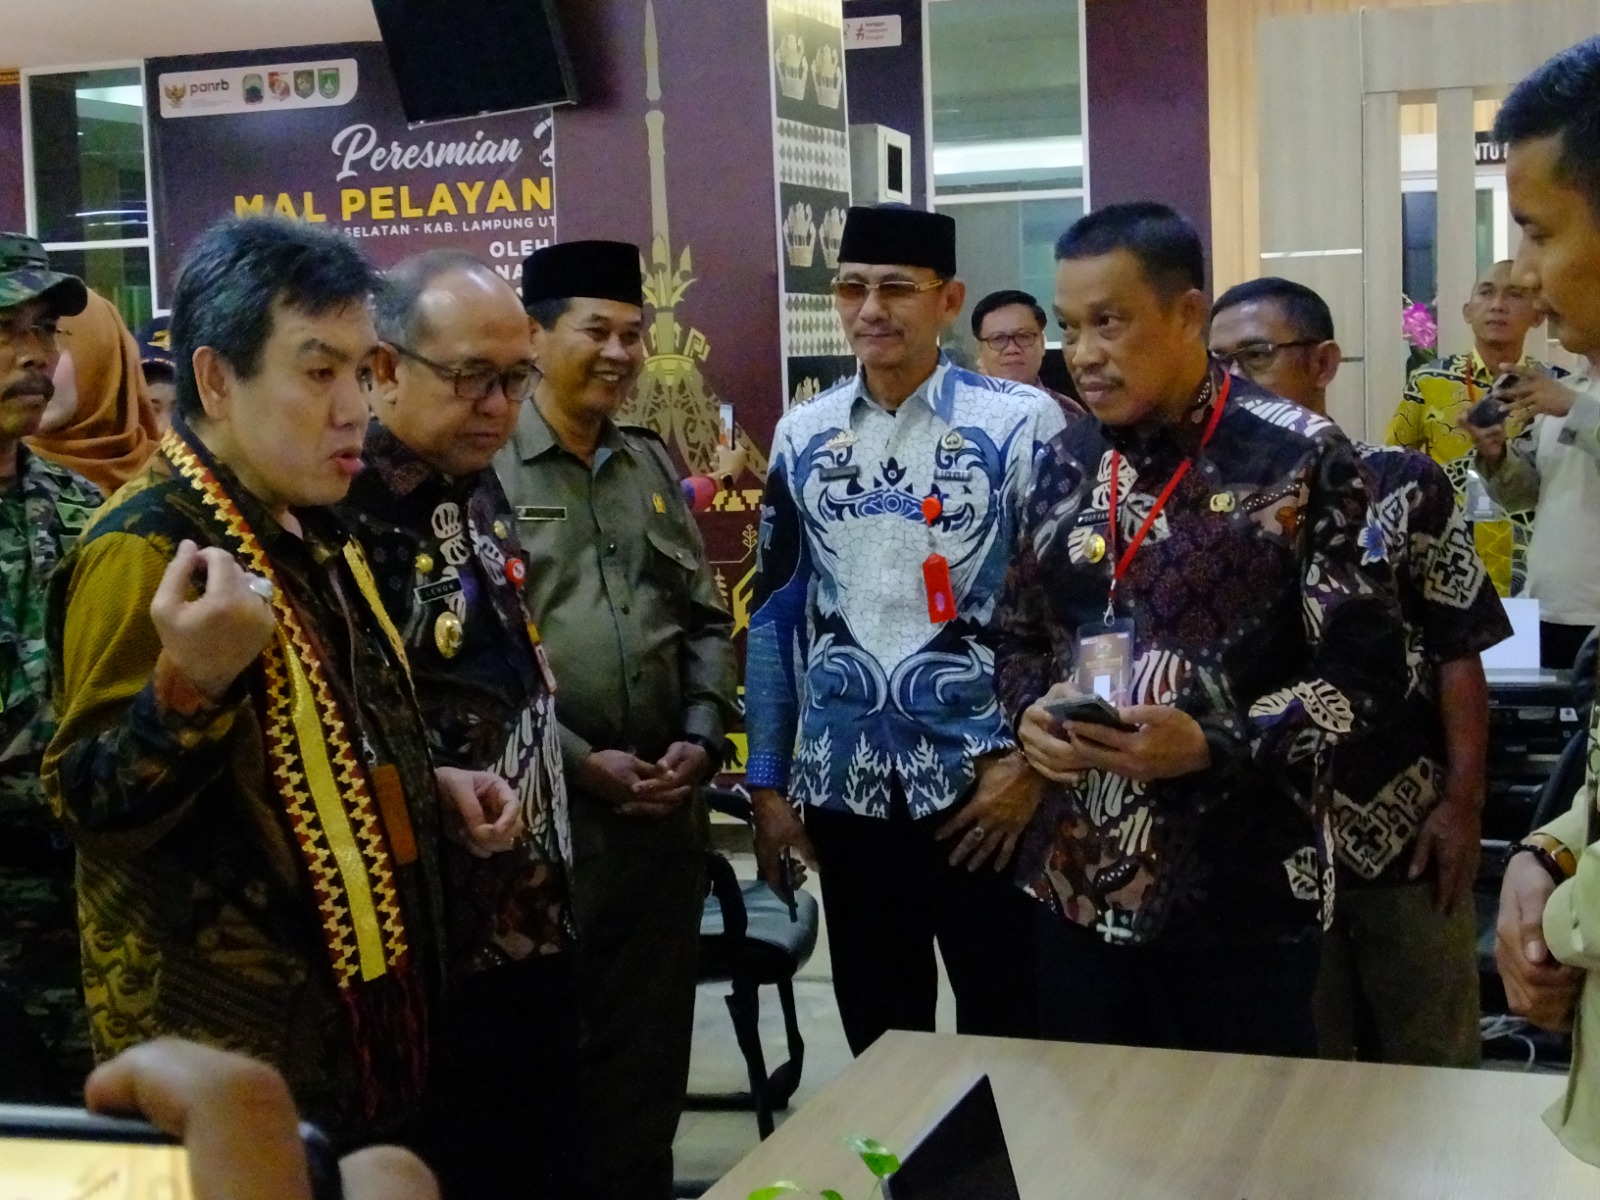 Pemerintah Kabupaten Lampung Utara Membuka Secara Resmi Mall Pelayanan Publik.